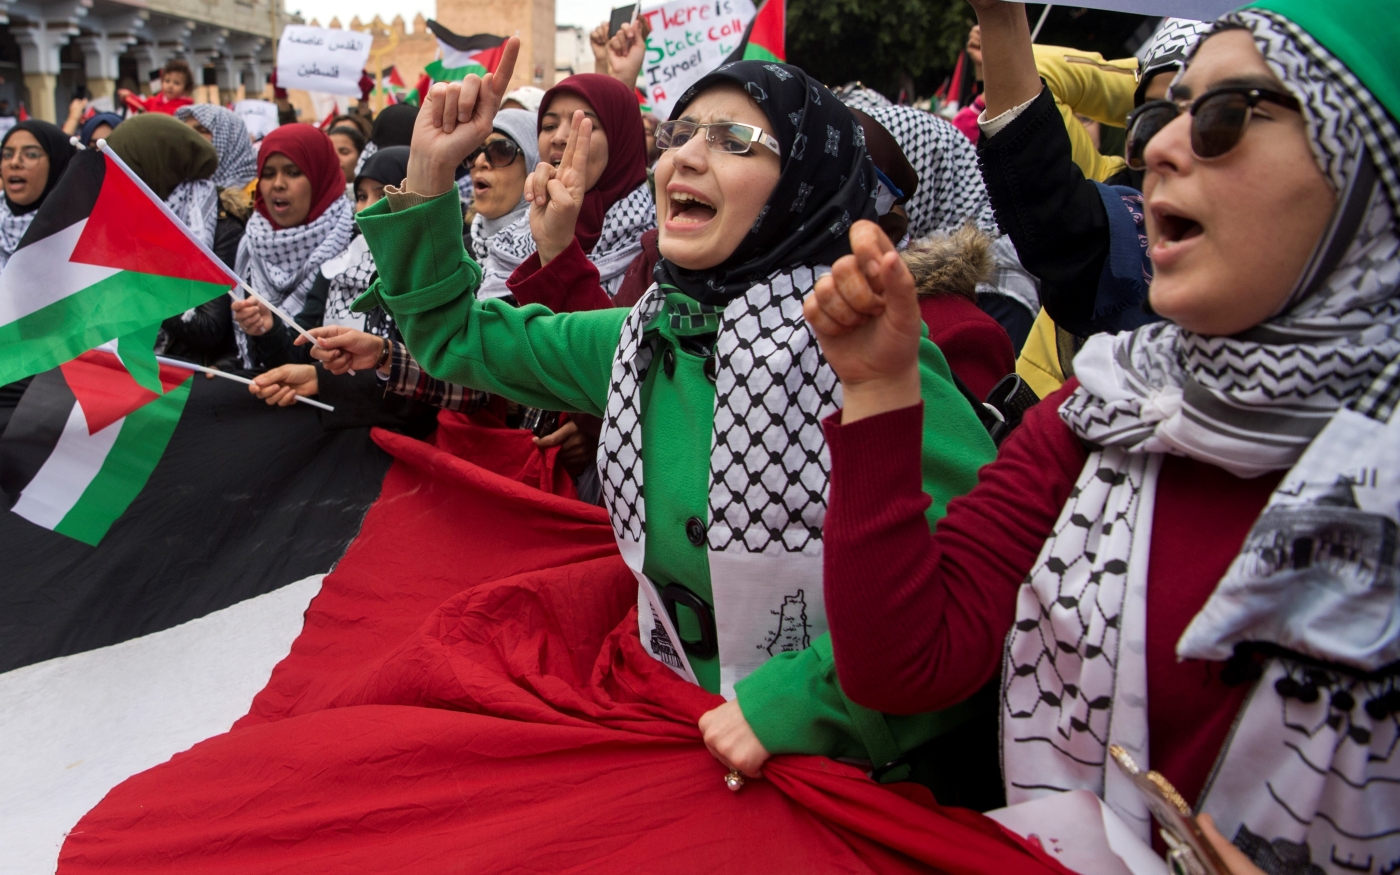 Des manifestants propalestiniens agitent des drapeaux palestiniens et scandent des slogans contre les États-Unis et Israël à Rabat (Maroc), le 10 décembre 2017 (AFP)